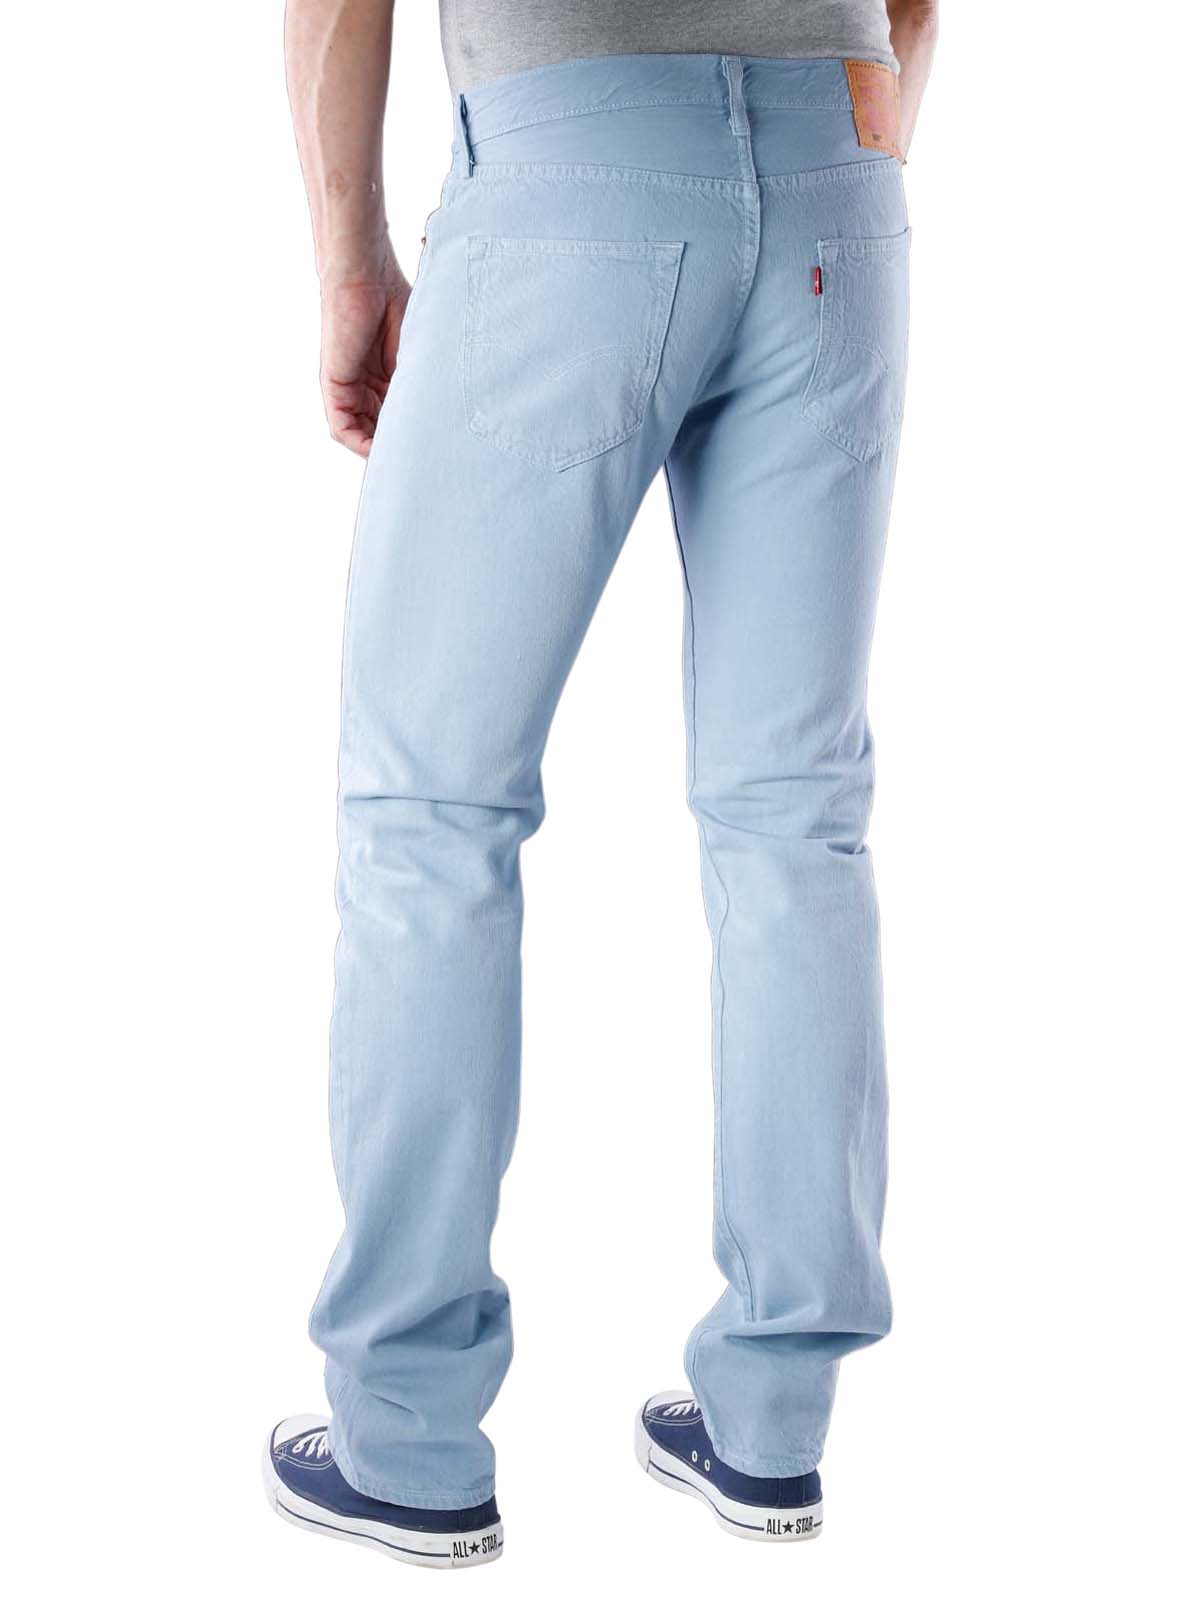 levis jeans light blue